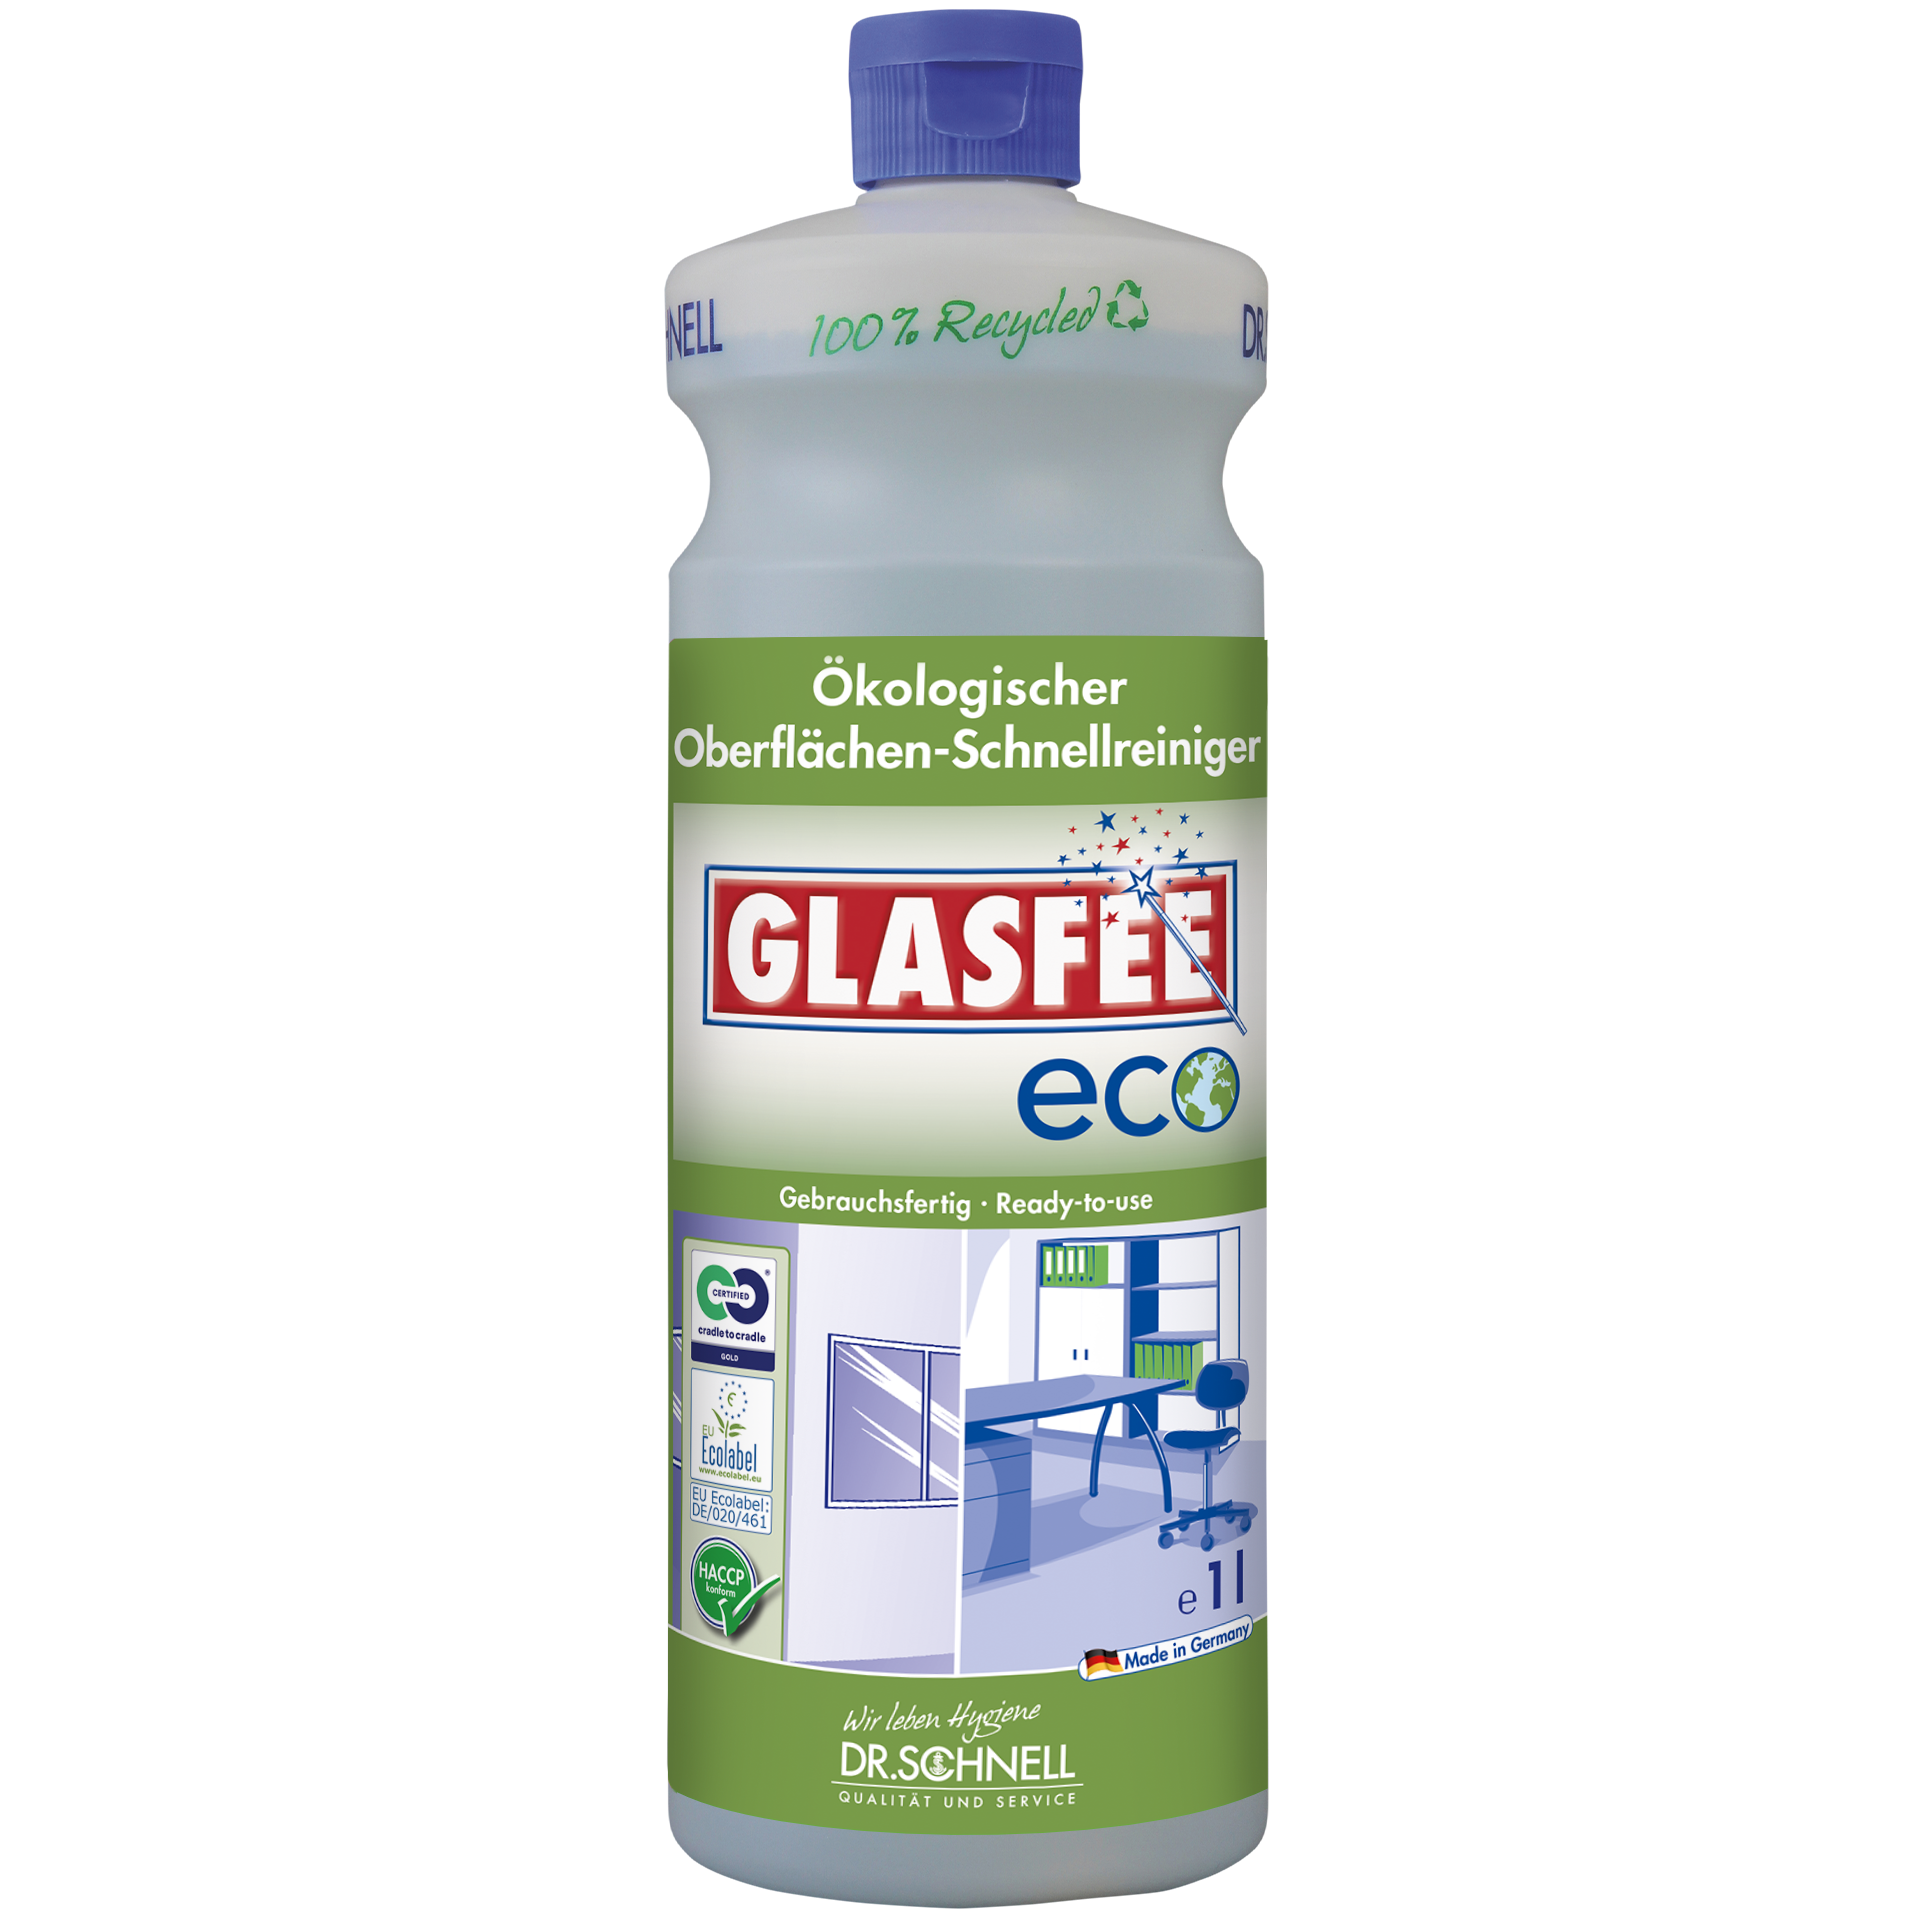 Dr. Schnell GLASFEE ECO ökologischer Oberflächen-Schnellreiniger, 1 L Flasche